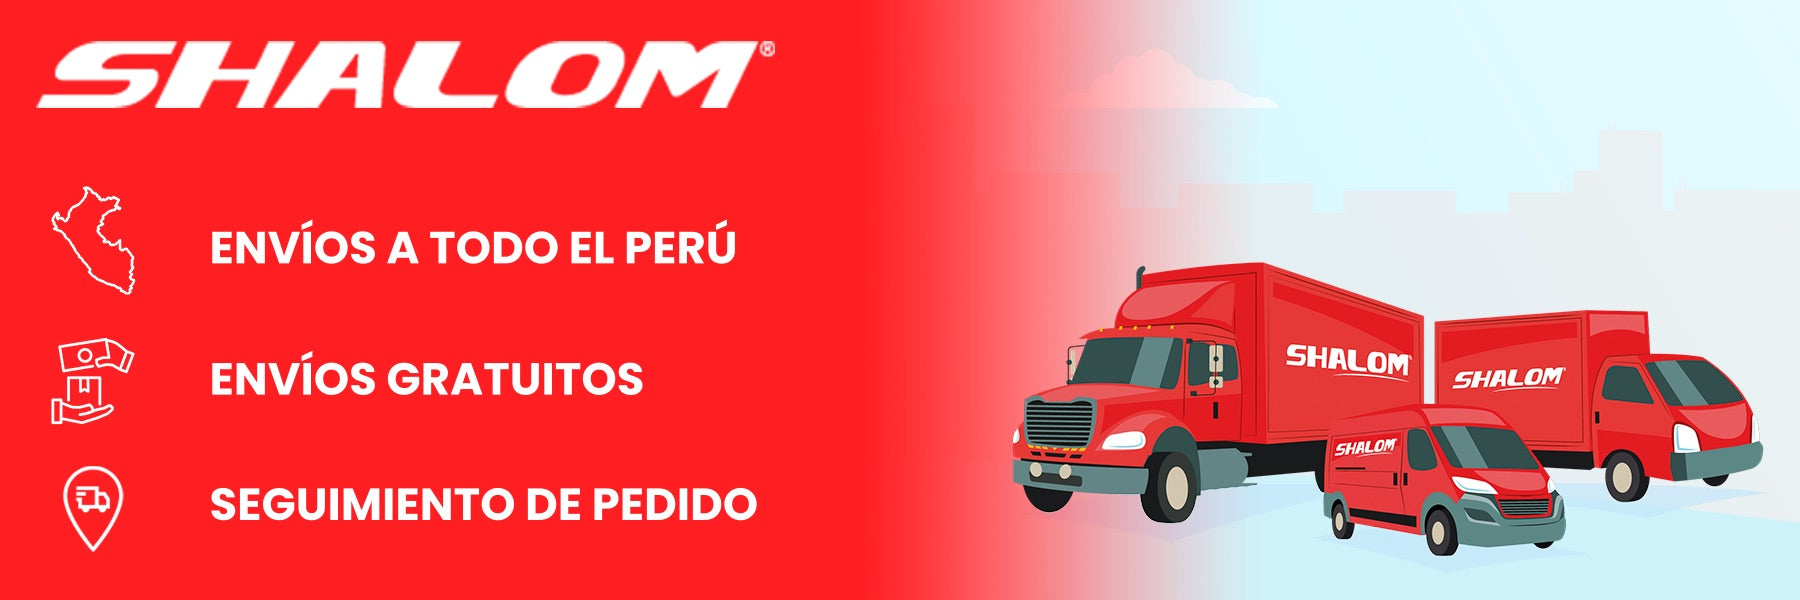 Envios gratuitos a todo el Perú vía Shalom